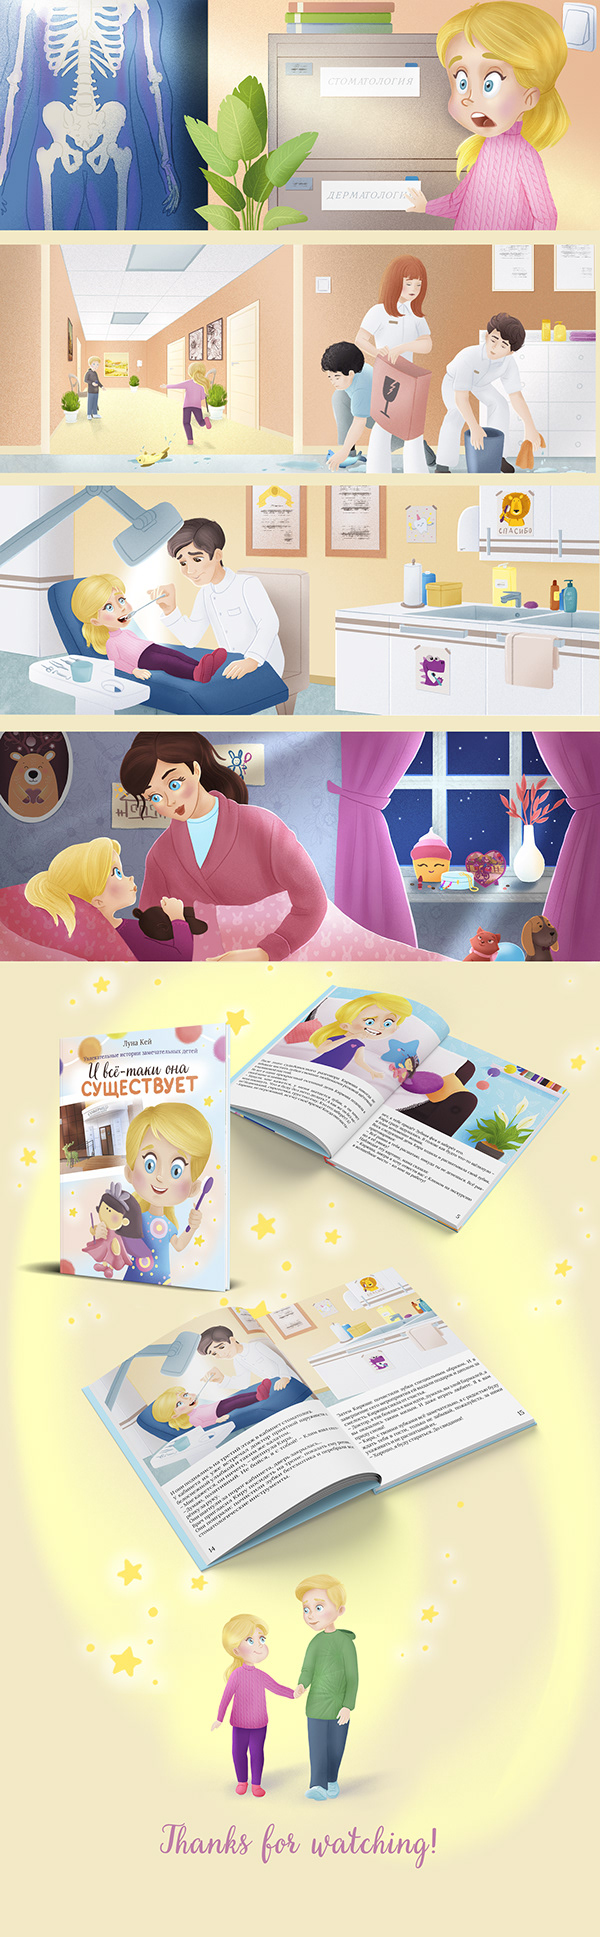 Illustrations for children's book